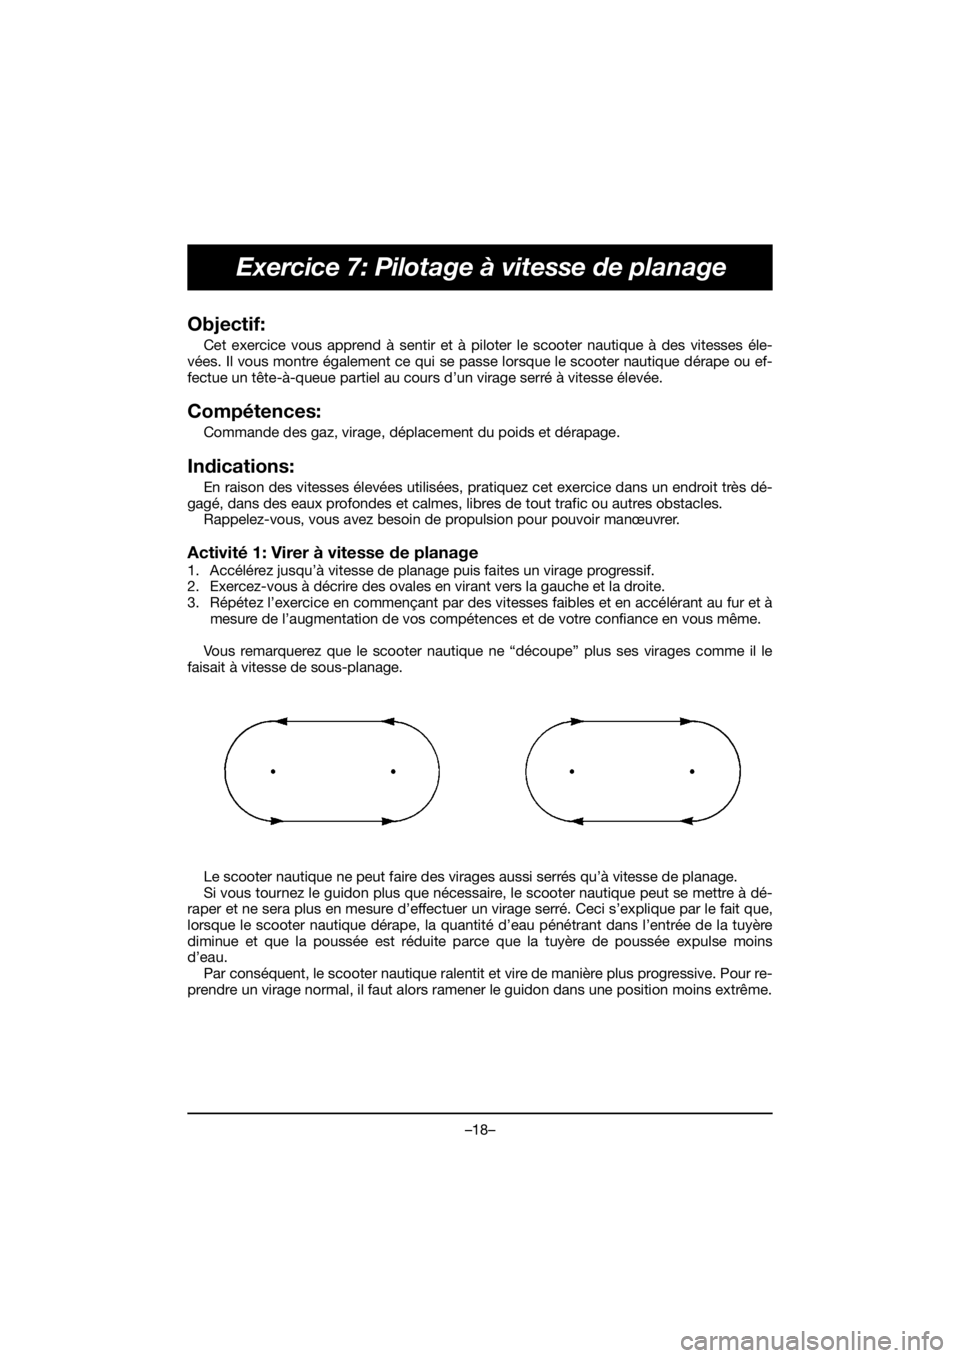 YAMAHA EX SPORT 2020  Manuale de Empleo (in Spanish) –18–
Exercice 7: Pilotage à vitesse de planage
Objectif: 
Cet exercice vous apprend à sentir et à piloter le scooter nautique à des vitesses éle-
vées. Il vous montre également ce qui se pa